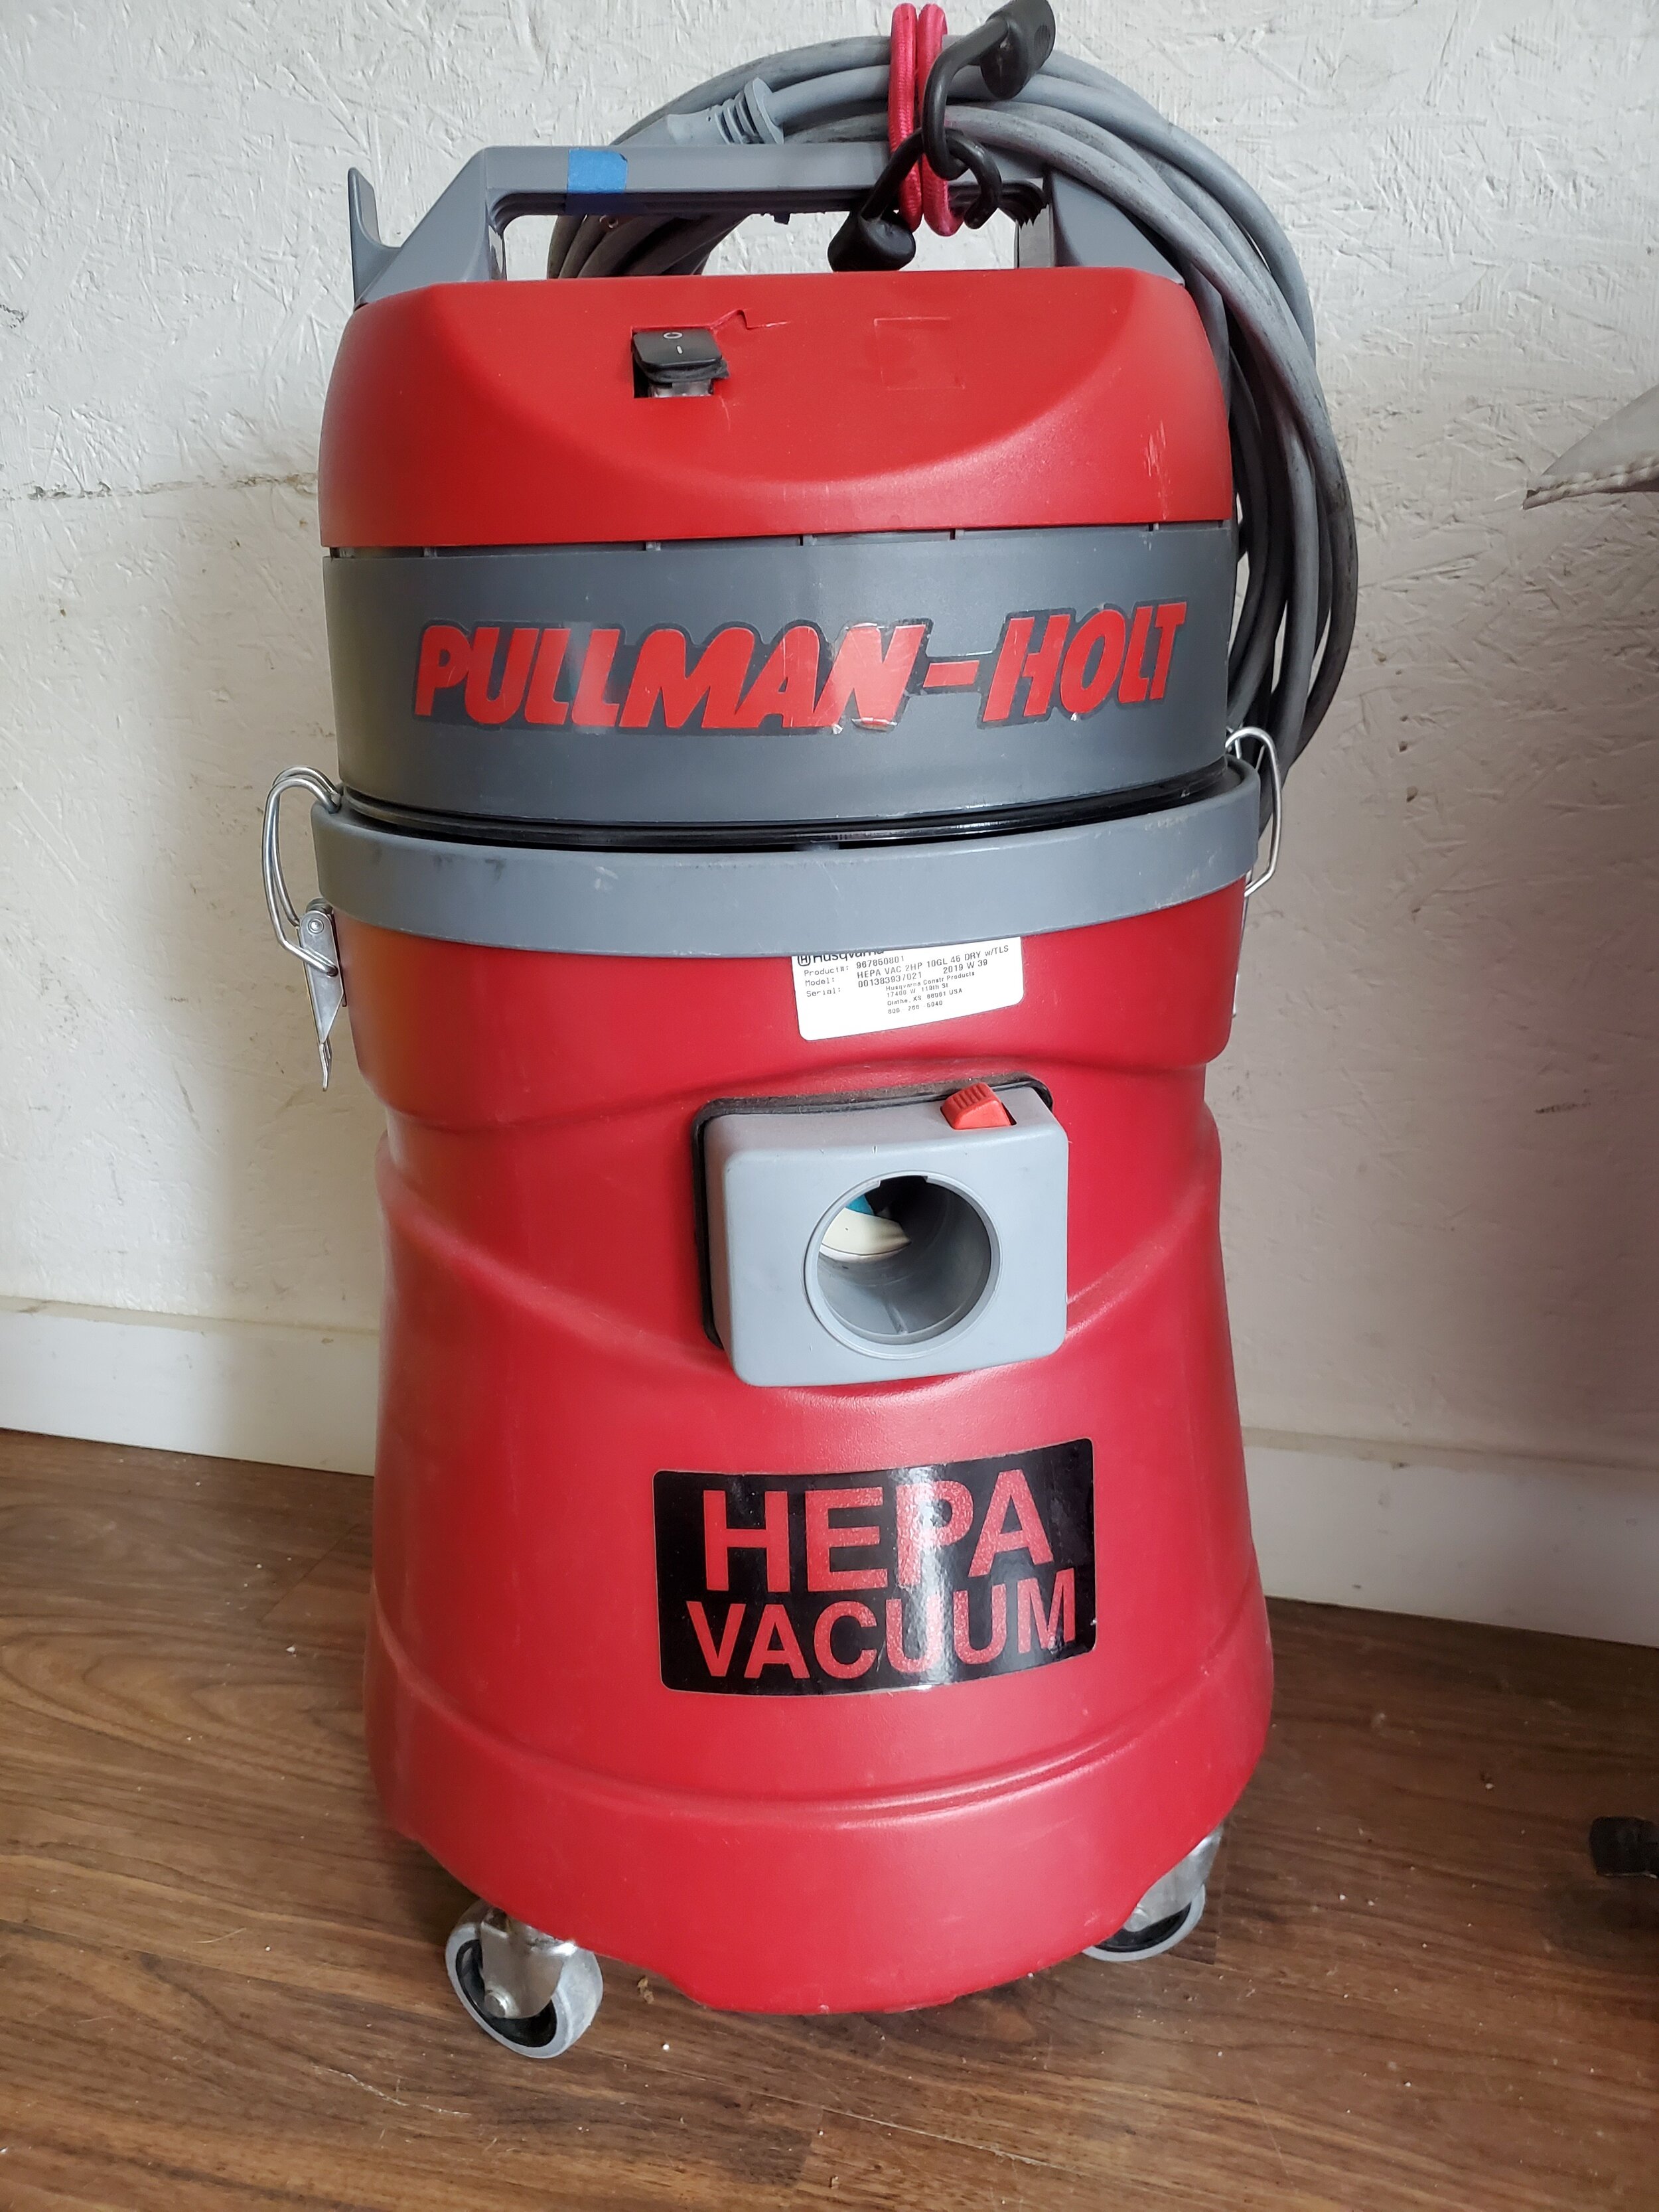 Pullman-Holt HEPA Vacuum